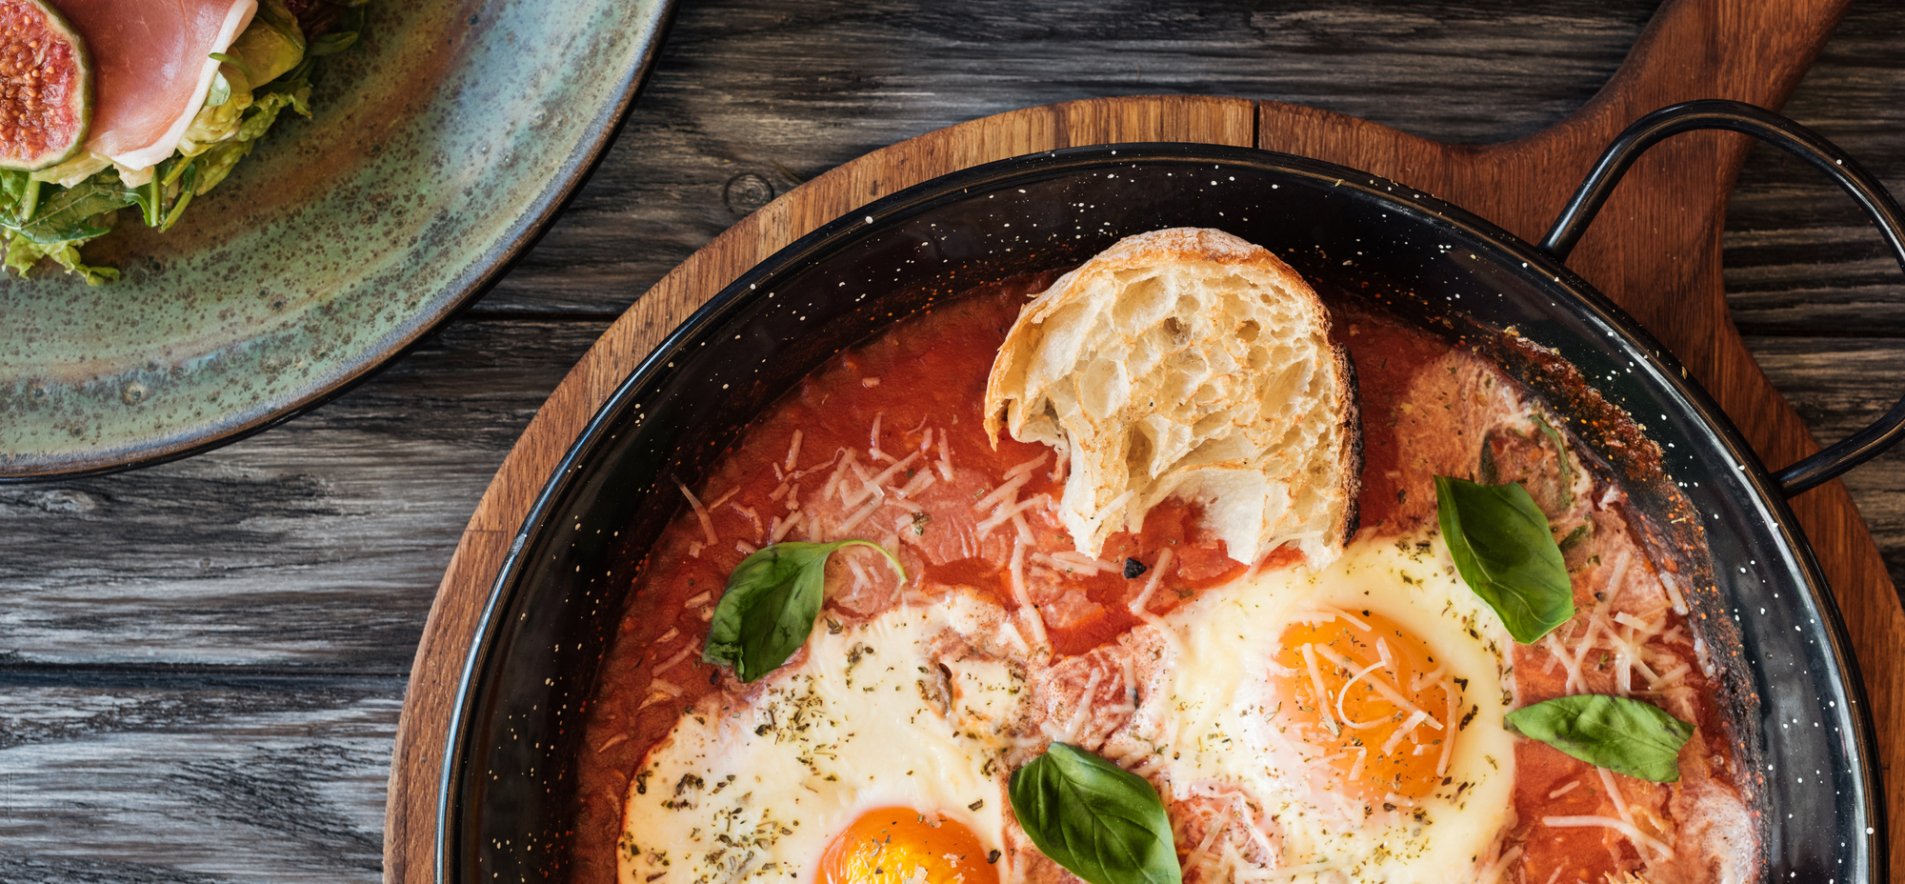 Как приготовить яичницу по-французски для завтрака выходного дня